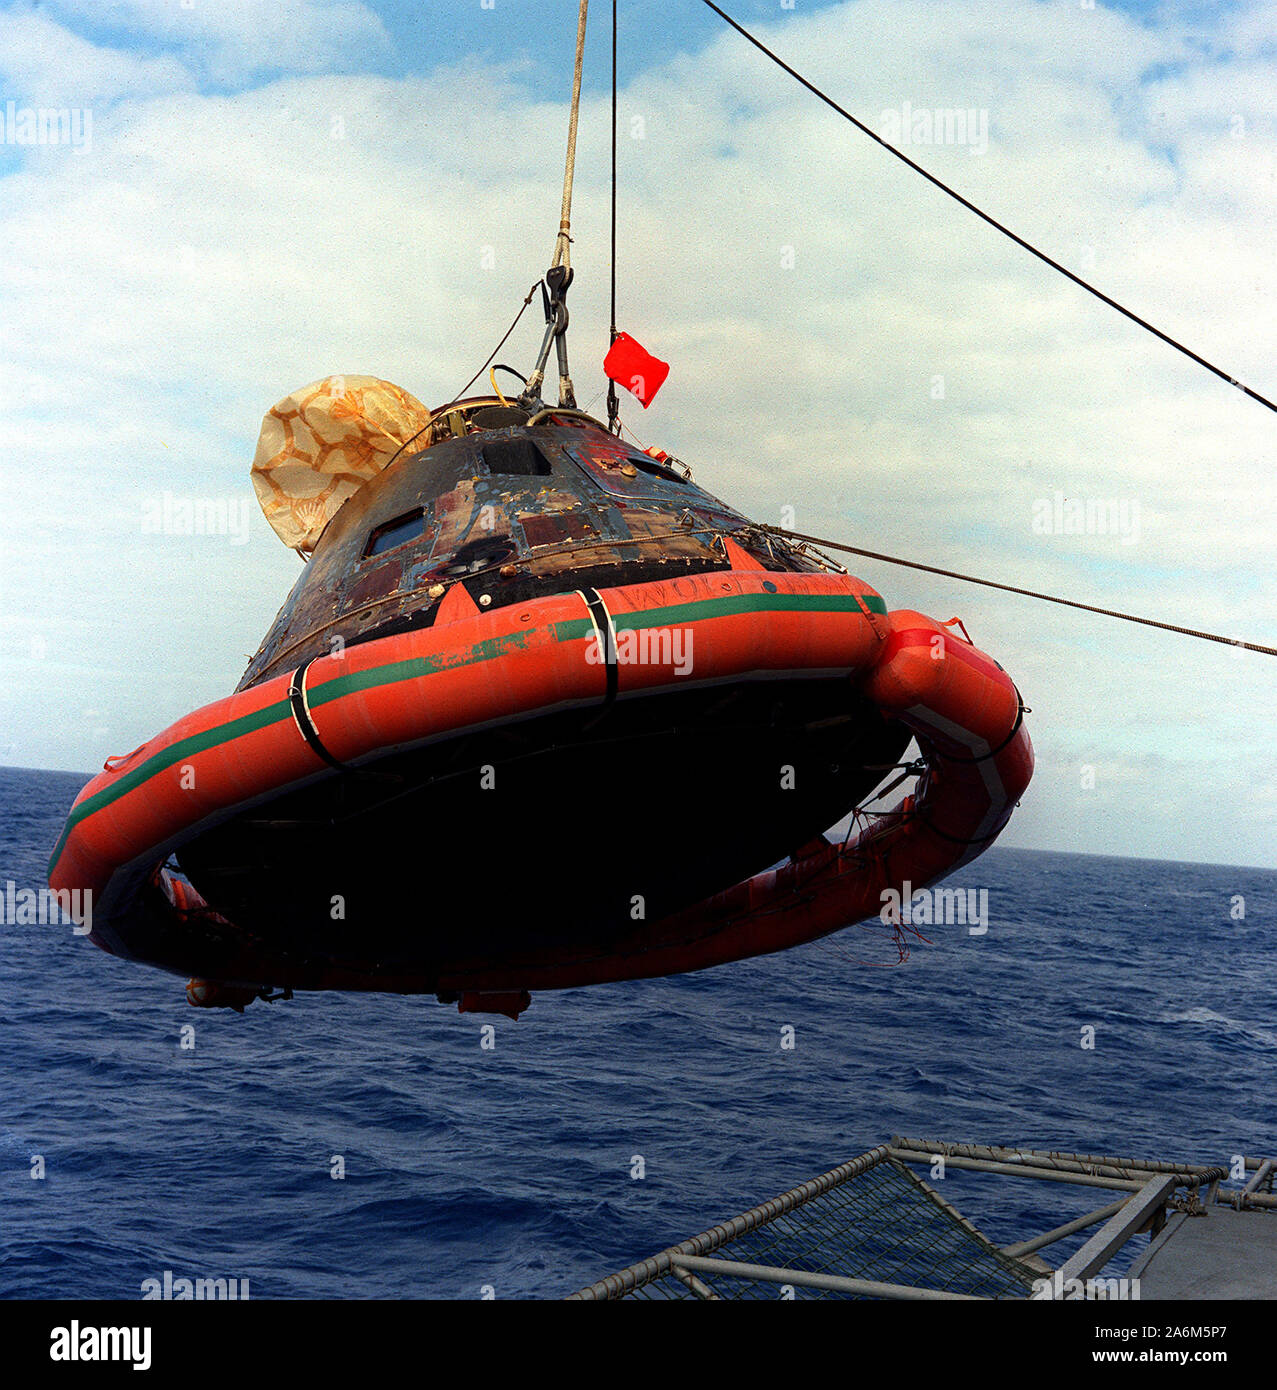 L'Apollo 11 Modulo di comando viene issata a bordo della USS Hornet, il primo recipiente di recupero per la storica missione Apollo 11 atterraggio lunare di missione. Il splashdown ha avuto luogo a 12:49 p.m. ET, 24 luglio 1969, circa 812 miglia nautiche a sud-ovest di Hawaii, solo dodici miglia nautiche dall'USS Hornet. Foto Stock